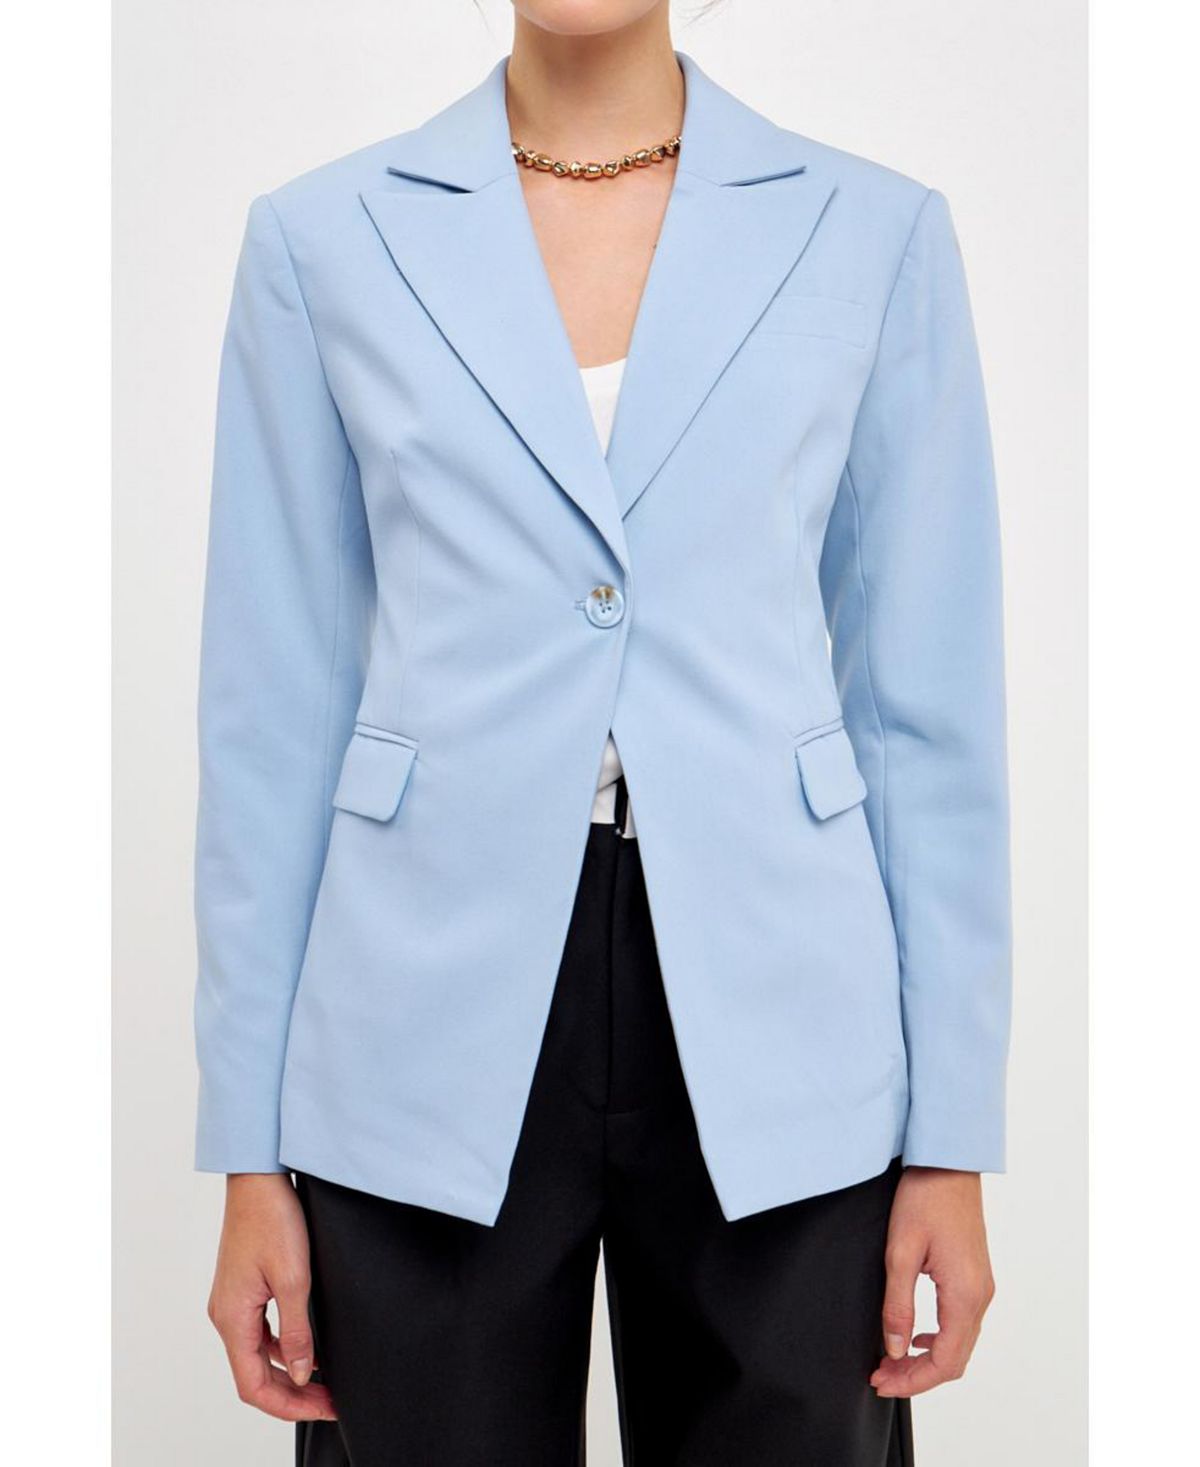 Женский приталенный пиджак на одной пуговице Grey Lab женский пиджак lux на одной пуговице calvin klein цвет charcoal